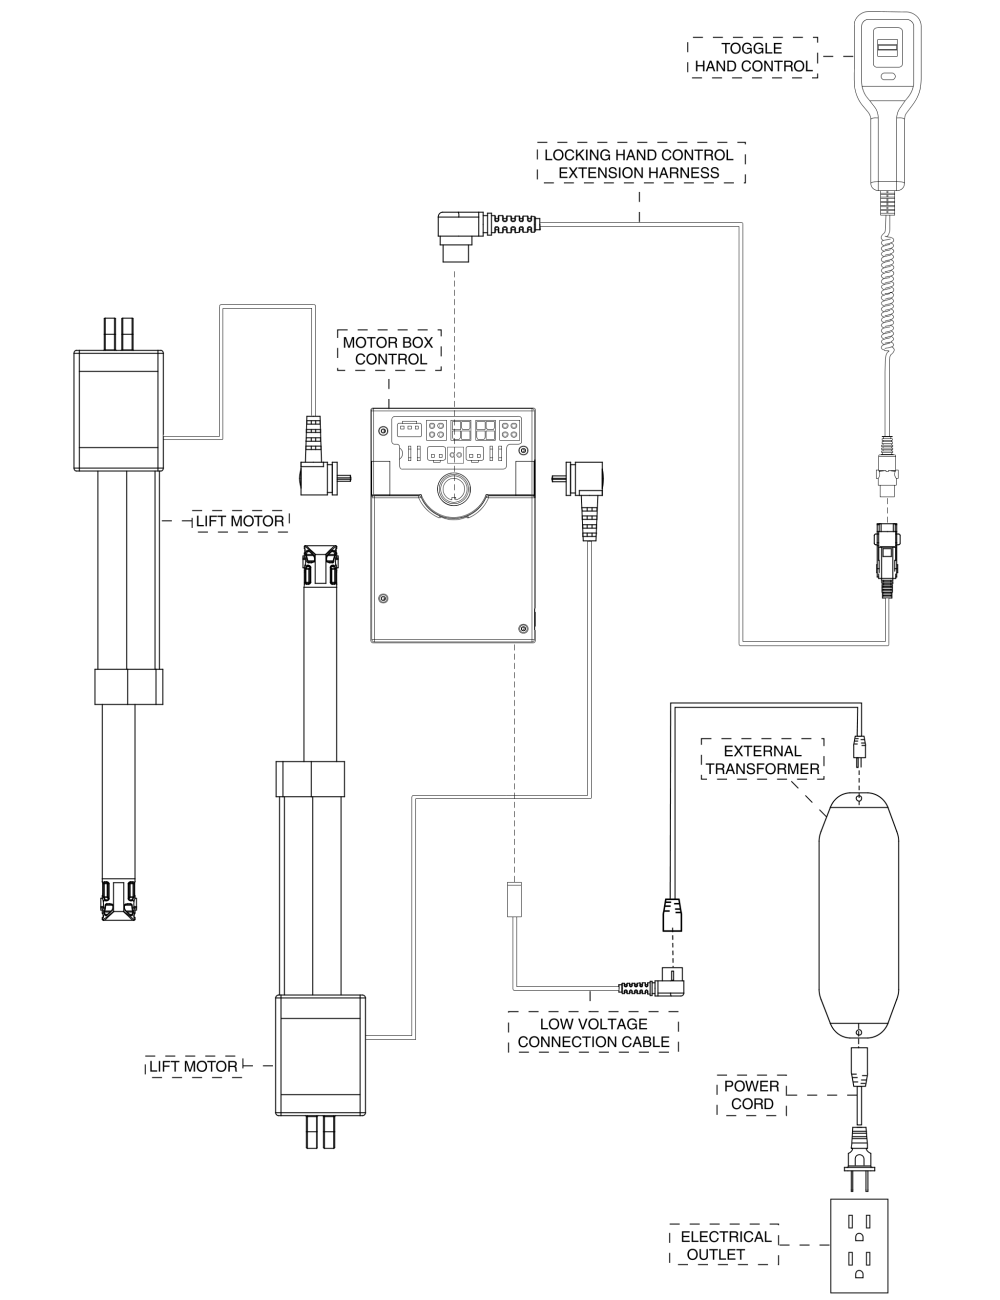 Electrical Diagram, Dual Motor, Us parts diagram